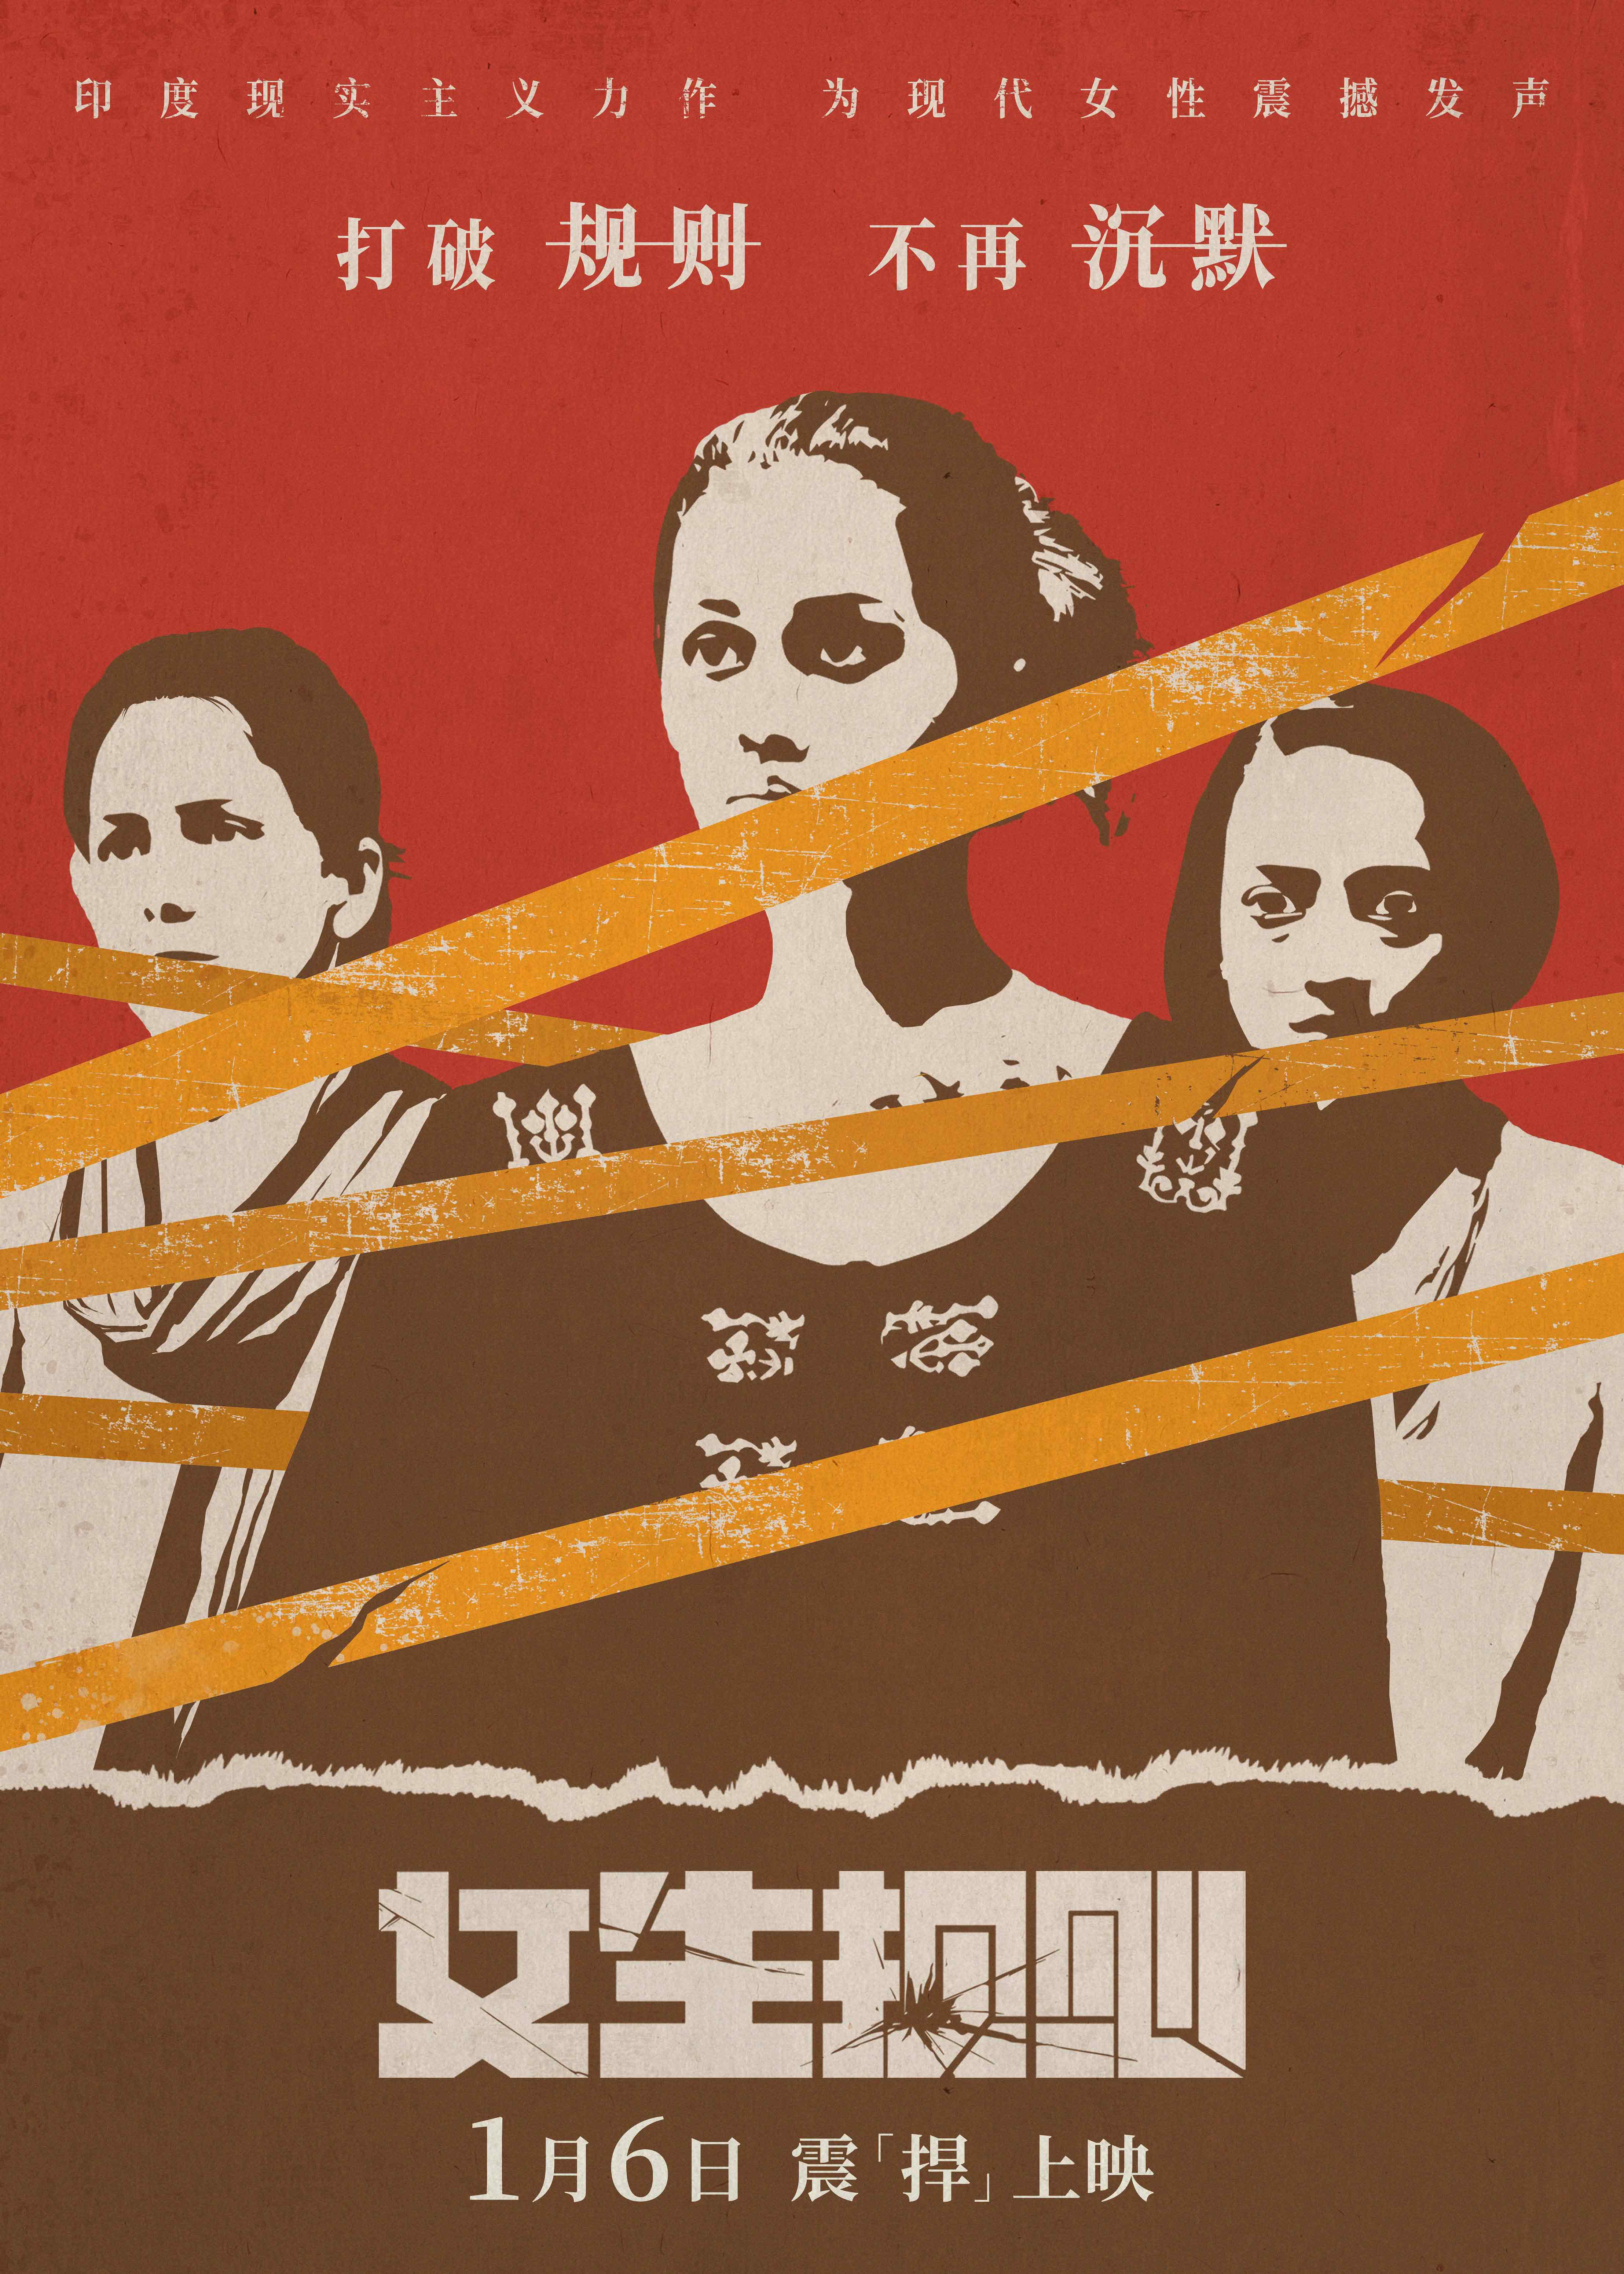 今日上映！印度话题力作《女生规则》大胆揭露女性歧视 观众赞“很敢拍！”